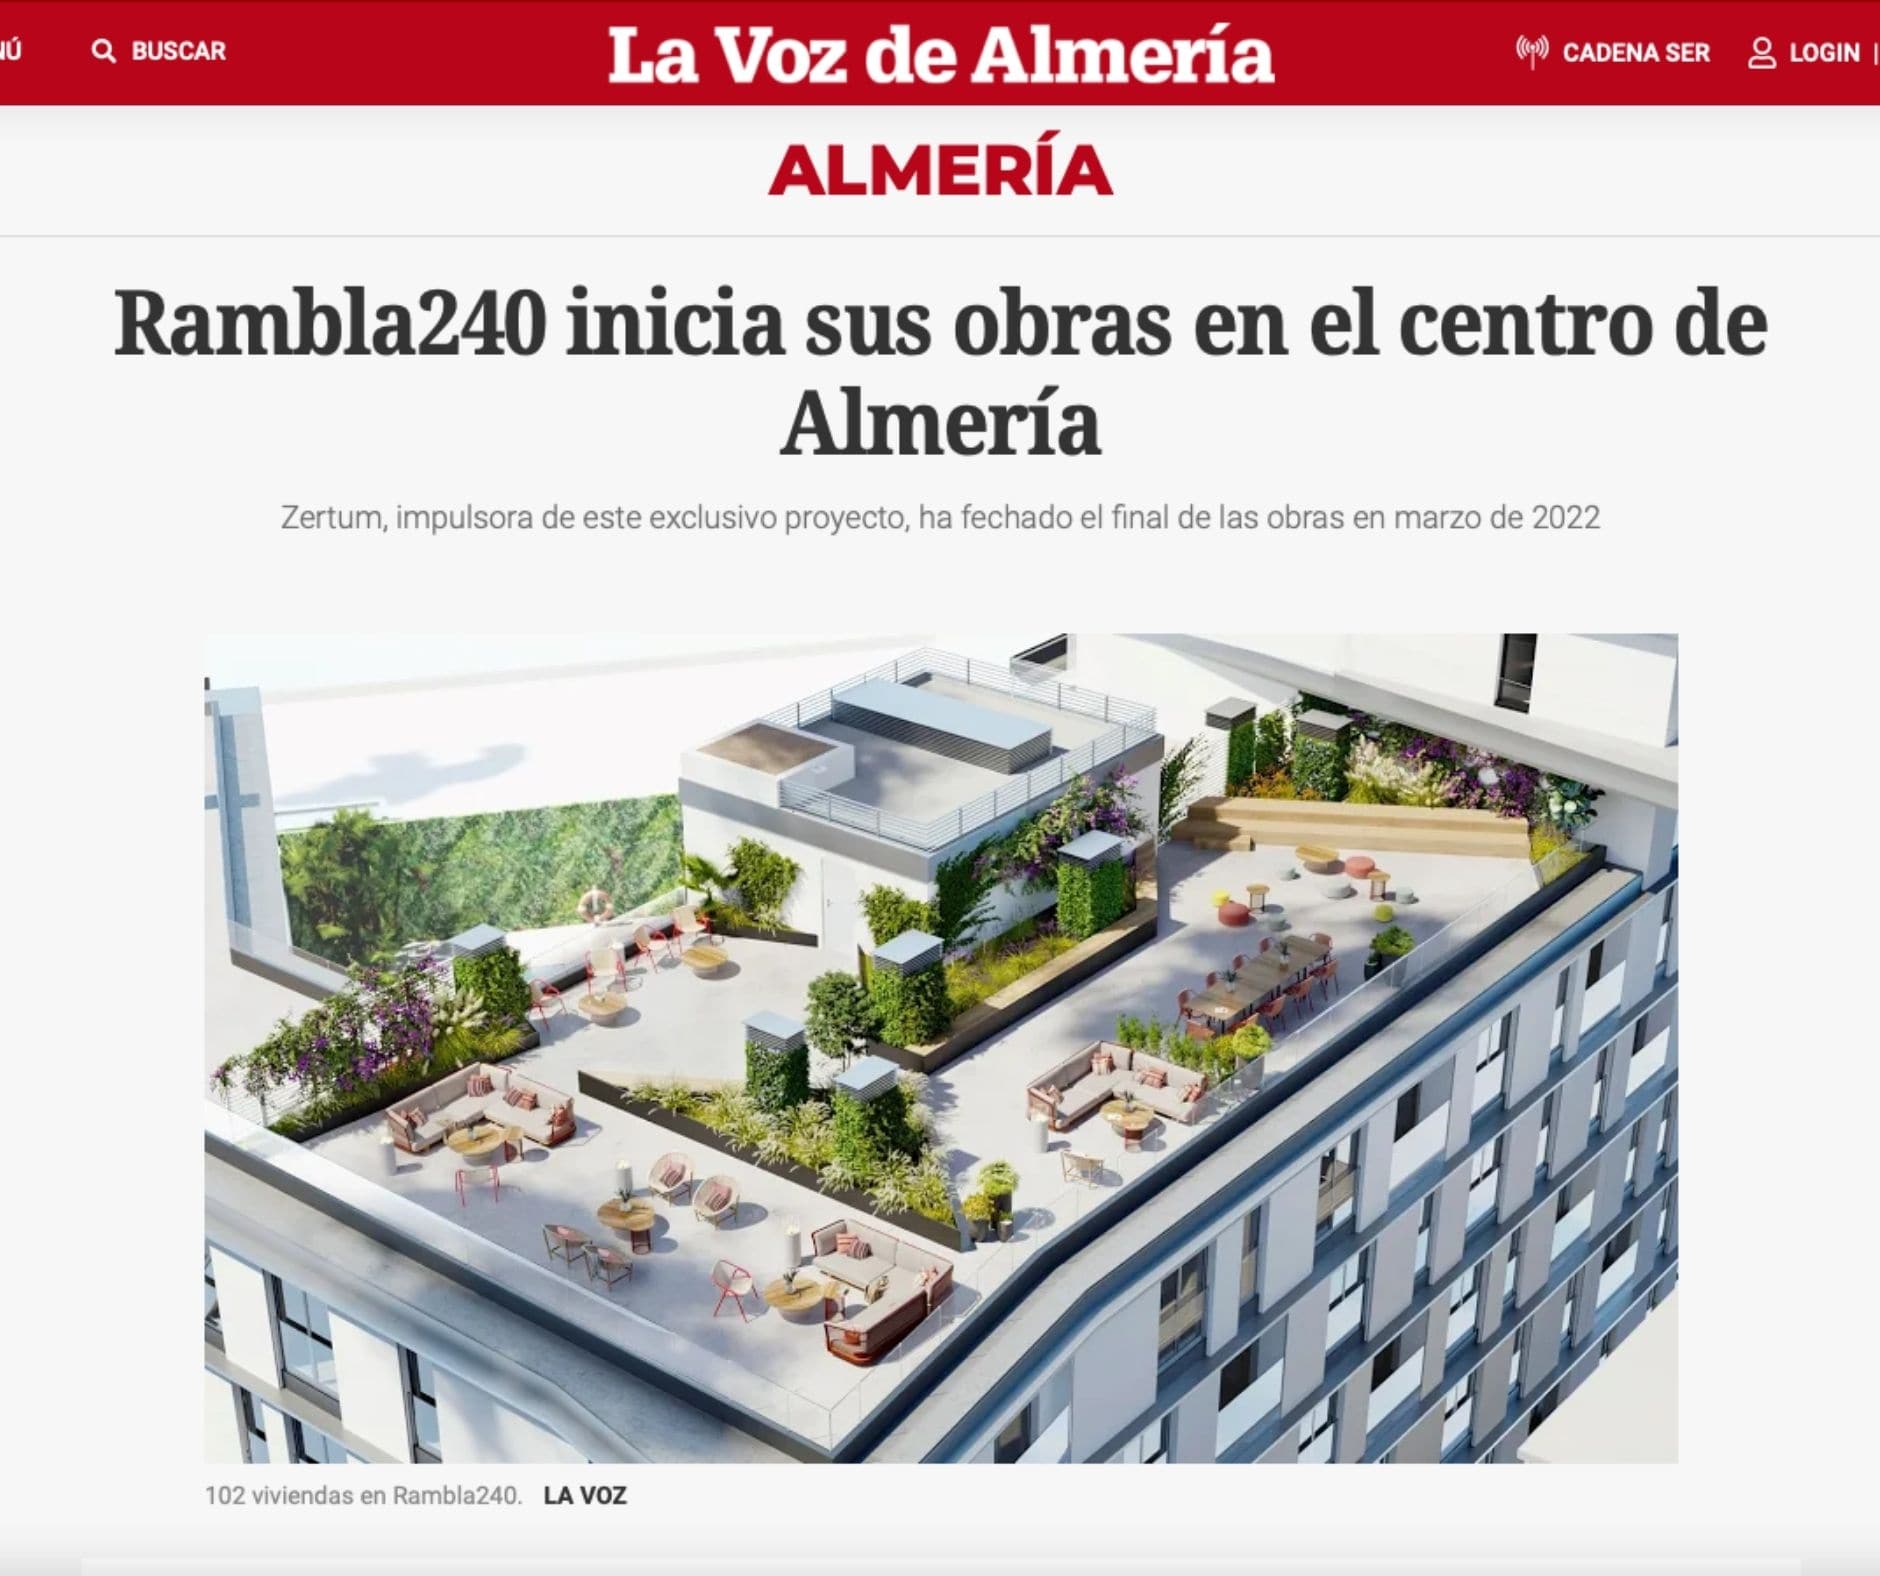 Rambla240 inicia sus obras en el centro de Almería